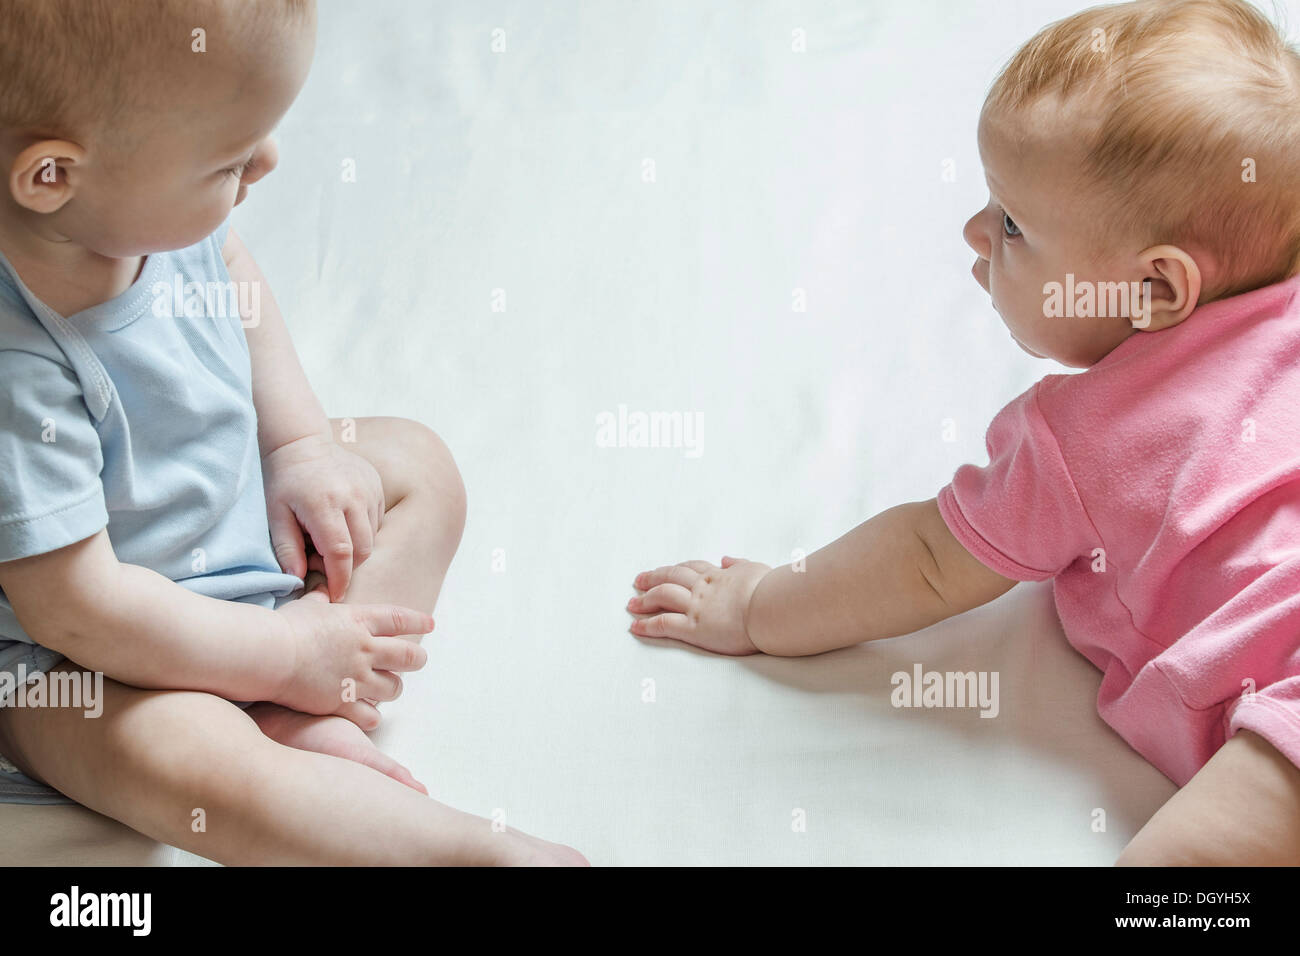 Deux bébés regardaient curieusement Banque D'Images